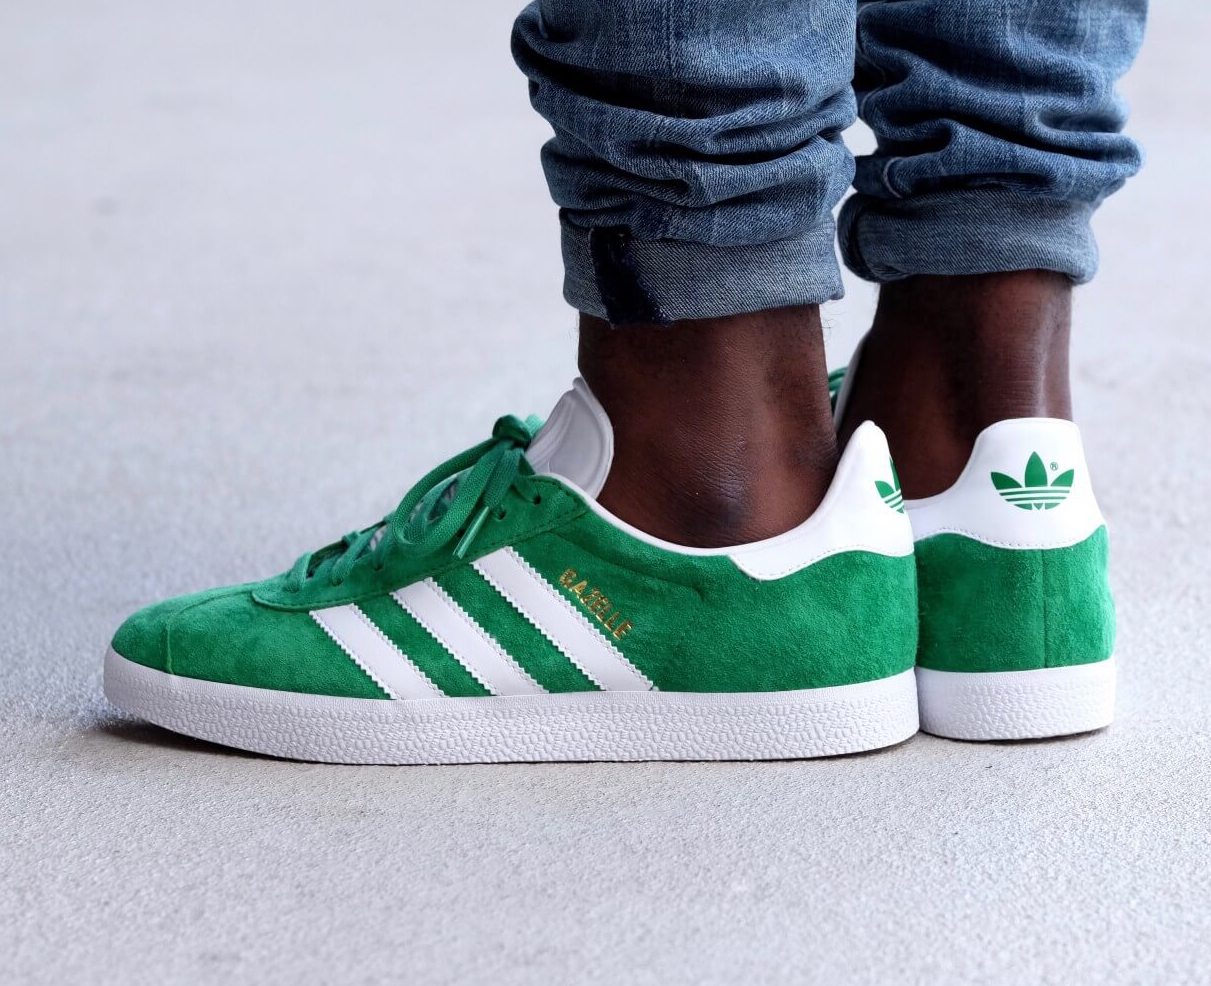 Ellos Resolver Motear On Sale: adidas Gazelle Suede "Green" — Sneaker Shouts